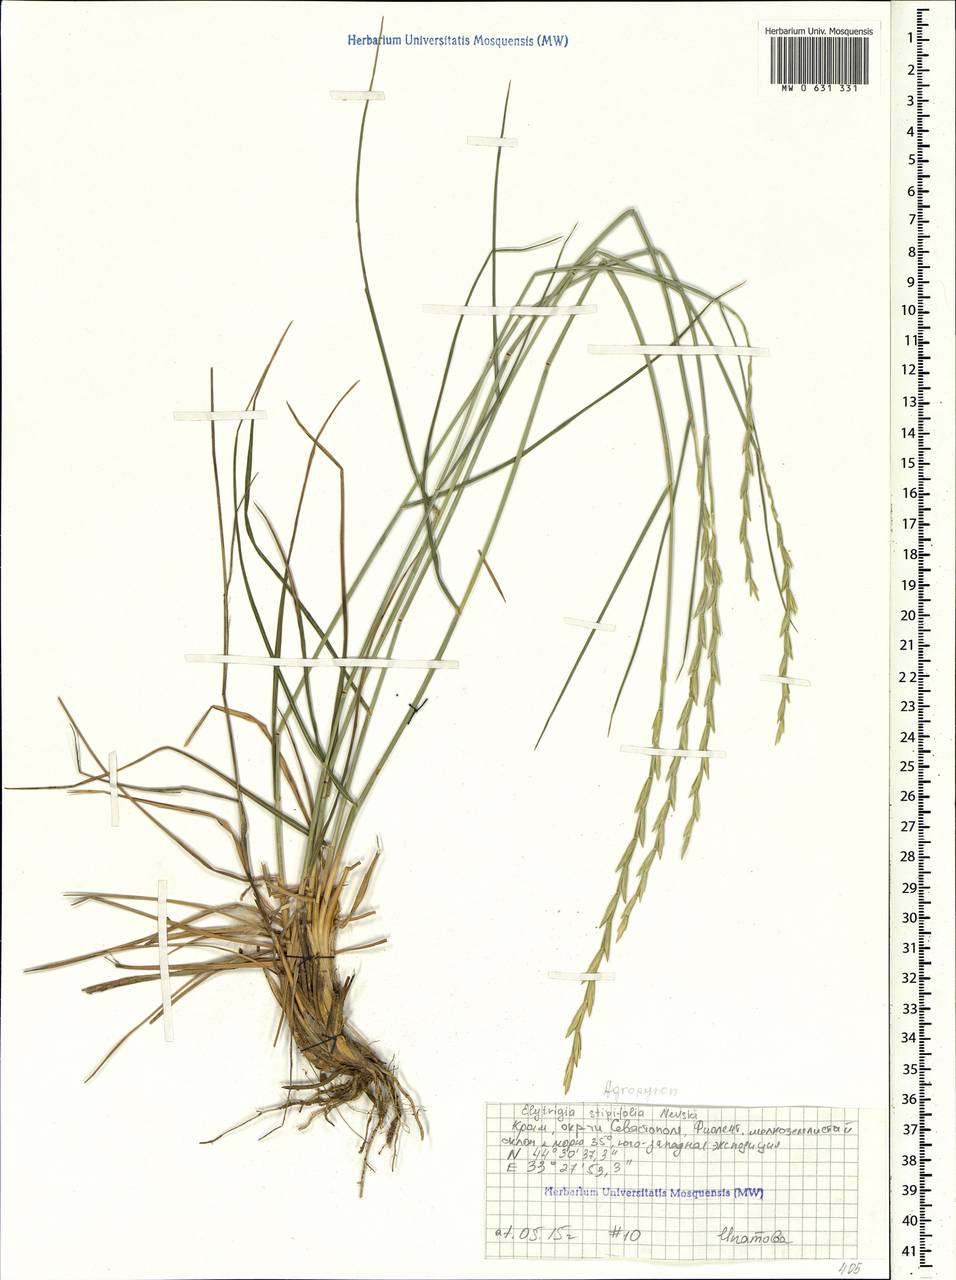 Pseudoroegneria stipifolia (Trautv.) Á.Löve, Крым (KRYM) (Россия)